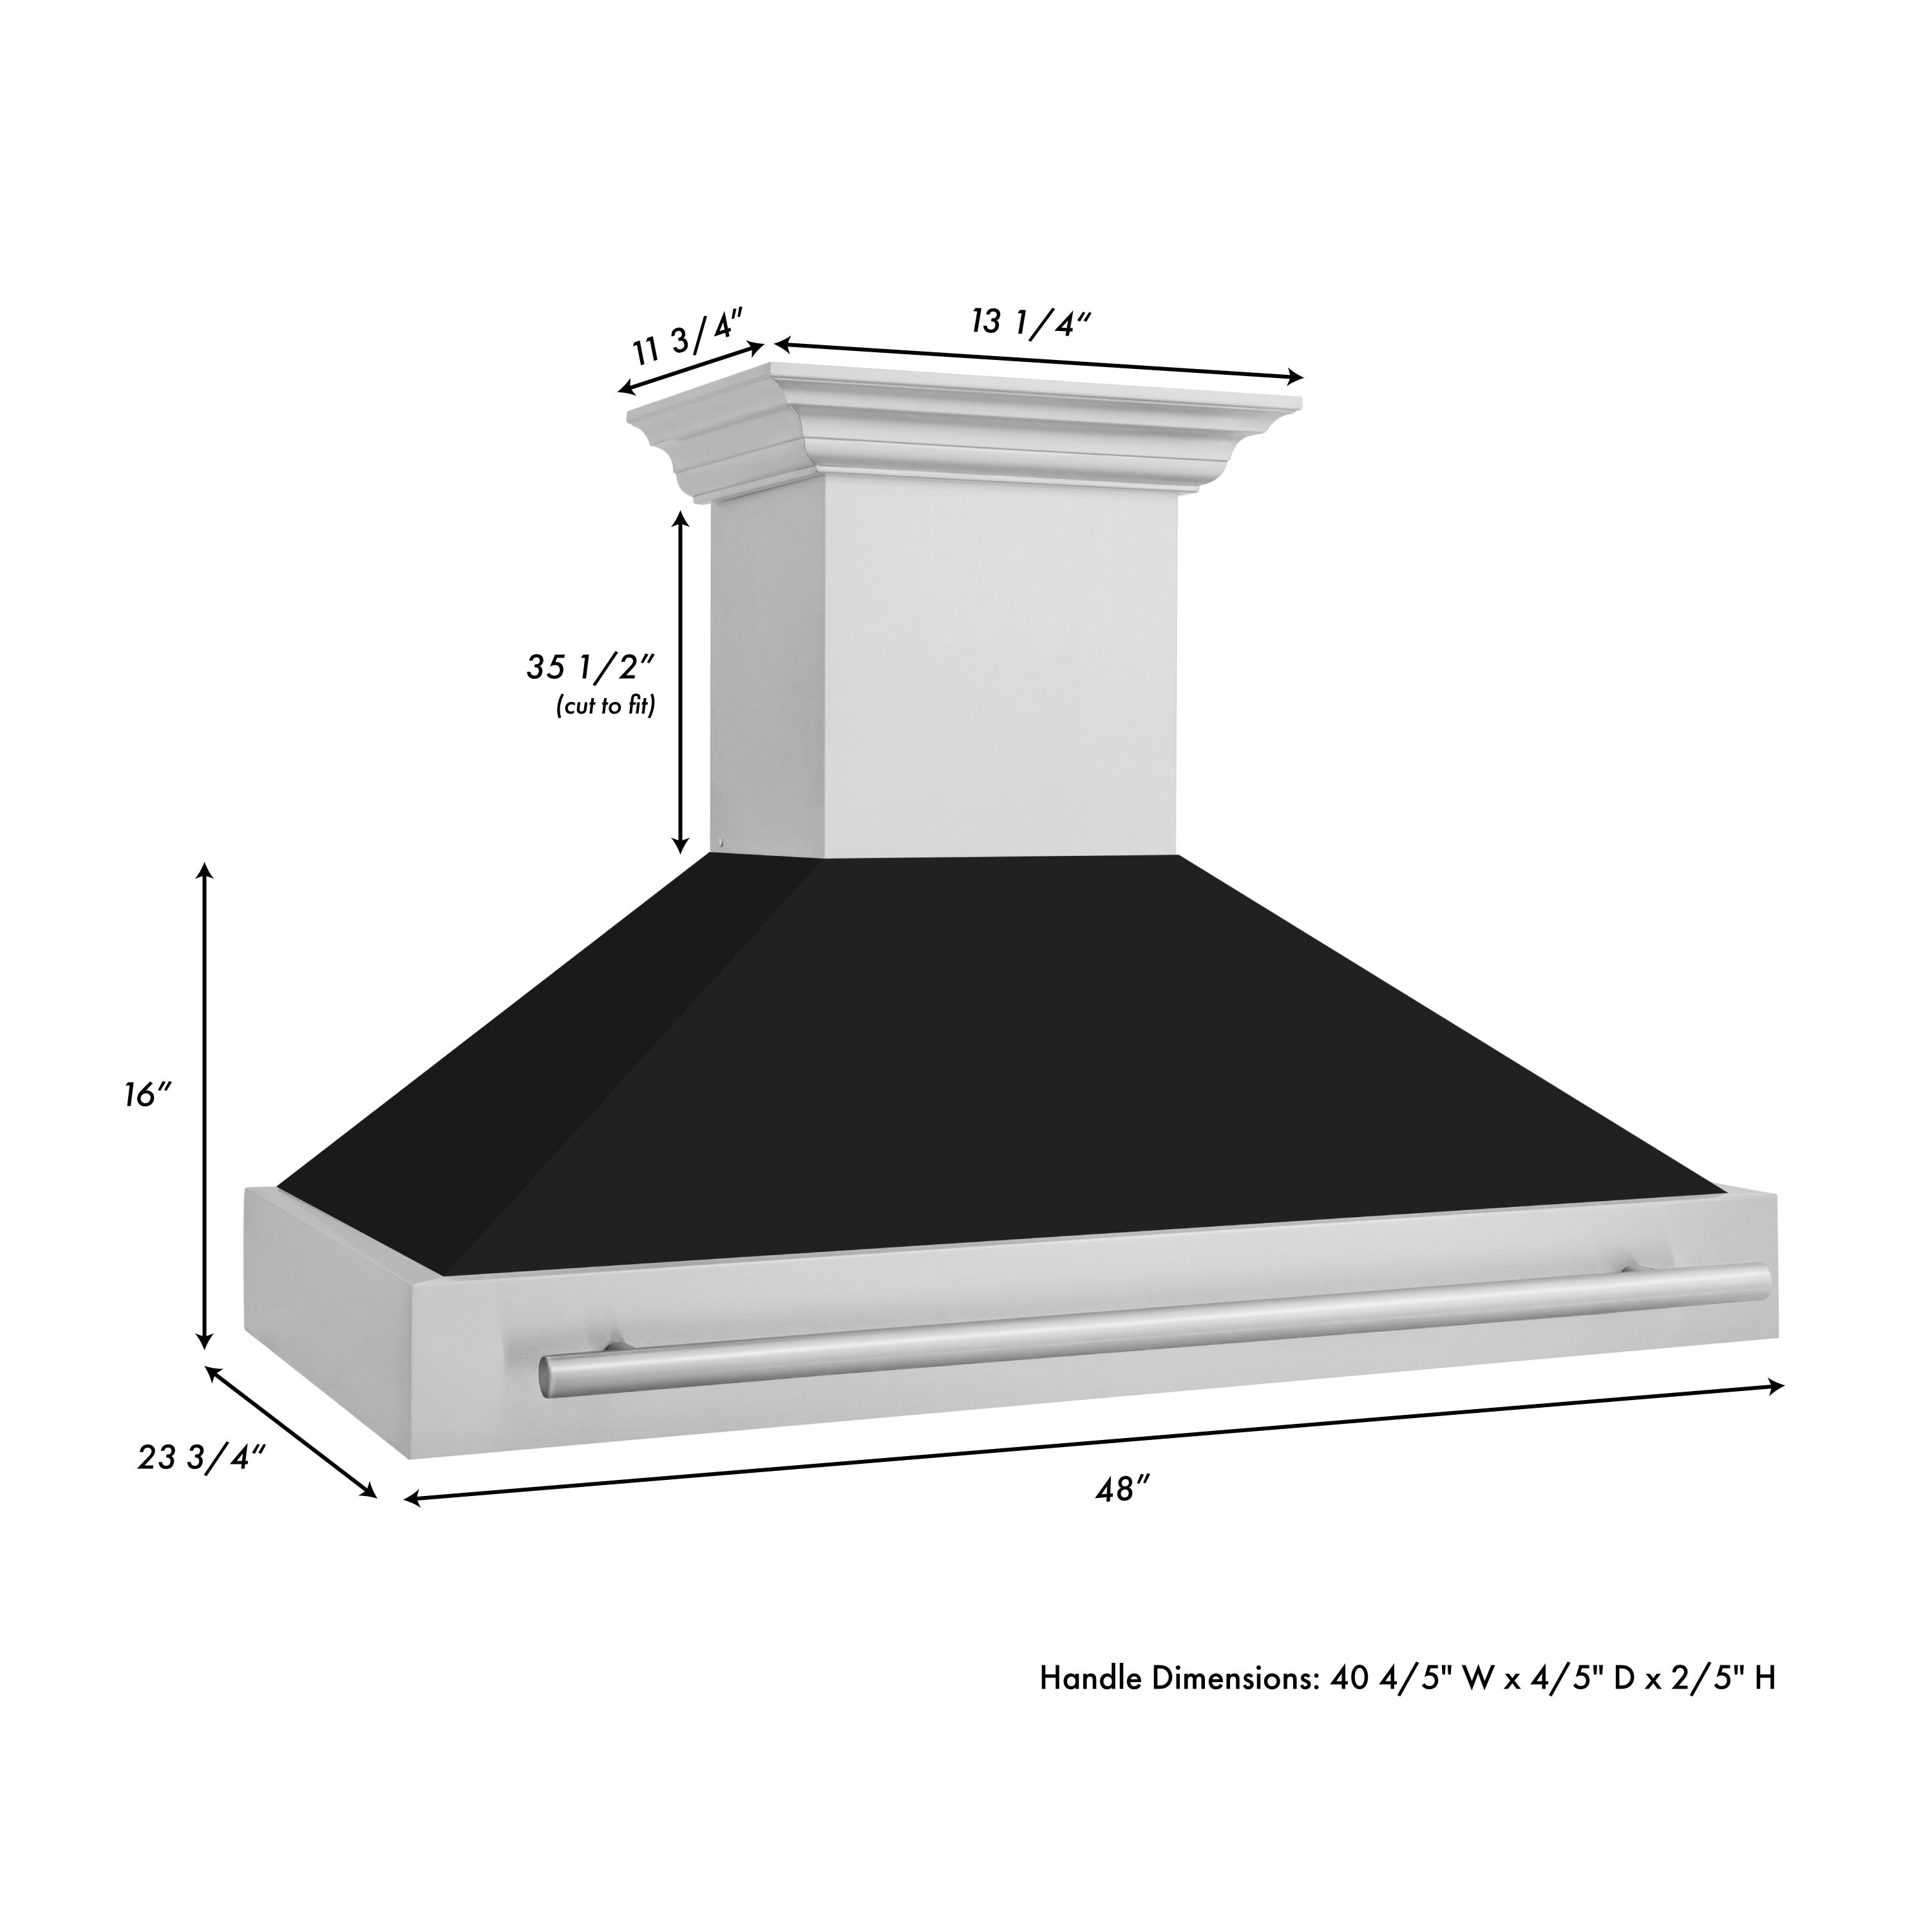 ZLINE Black Stainless Steel Range Hood with Black Stainless Steel Handle -  Bed Bath & Beyond - 36292192